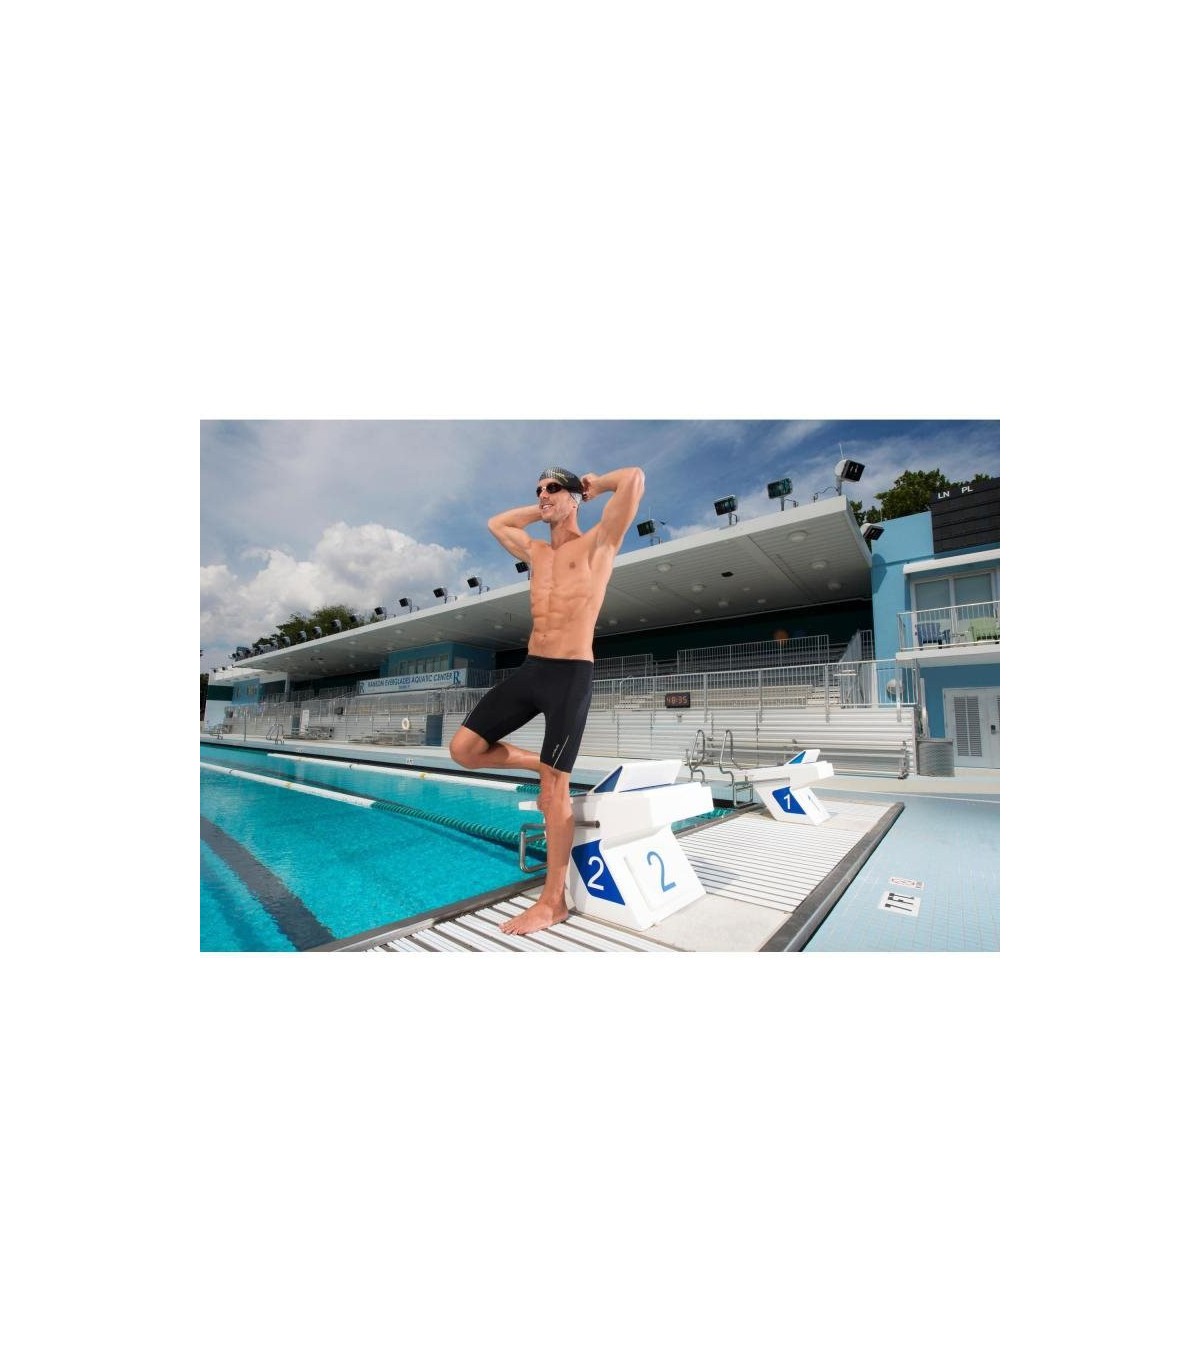 خرید اینترنتی مایو مردانه شنا از مرکز تخصصی لوازم شنا و تجهیزات ورزشی &#10003; برند دکتلون &#10003; تضمین اصالت کالا